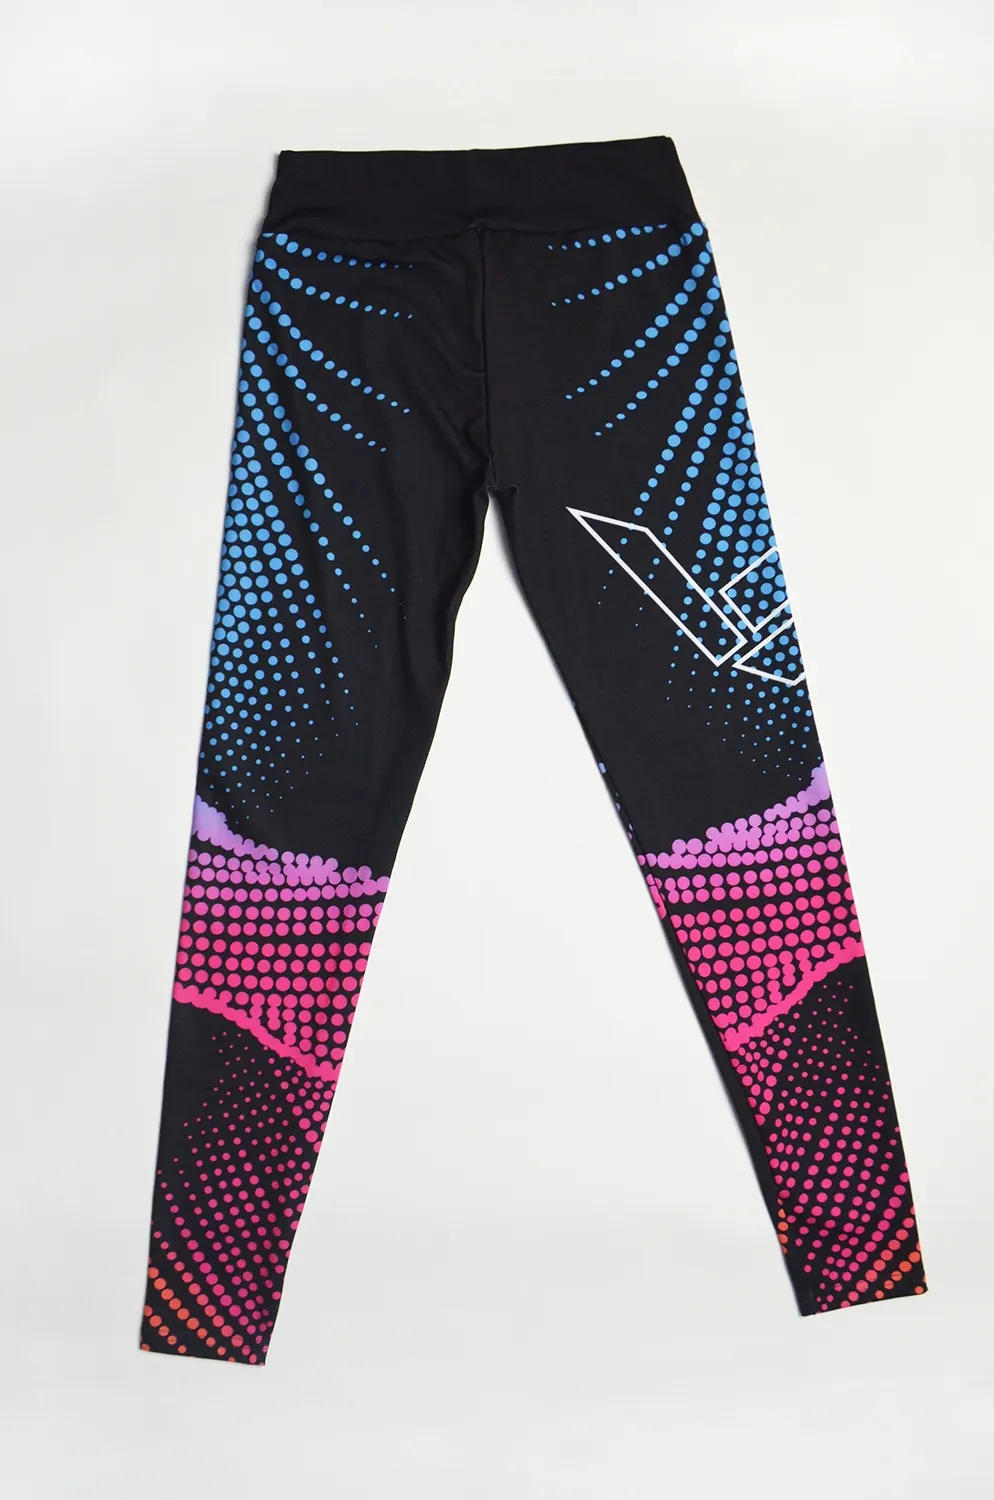 Leggins Mujer Mallas Deportivas Elástico - Pantalones de Jogging